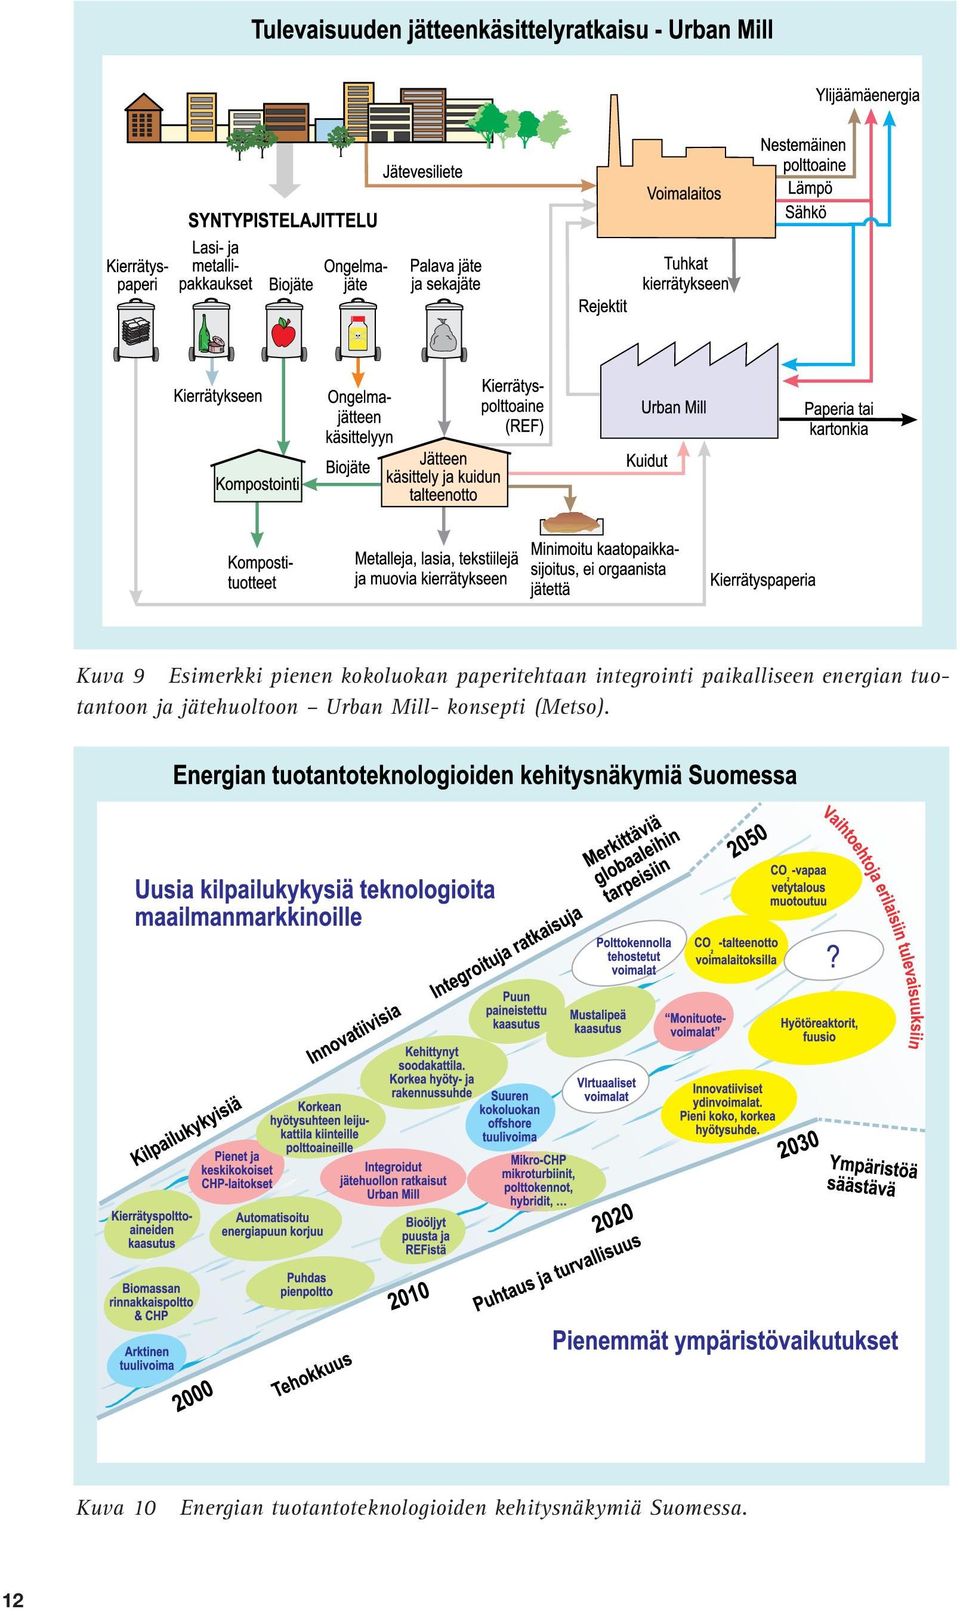 hyödyntämiseen. Bioenergiaosaaminen tarjoaa suomalaisille yrityksille myös hyviä mahdollisuuksia vientimarkkinoilla.